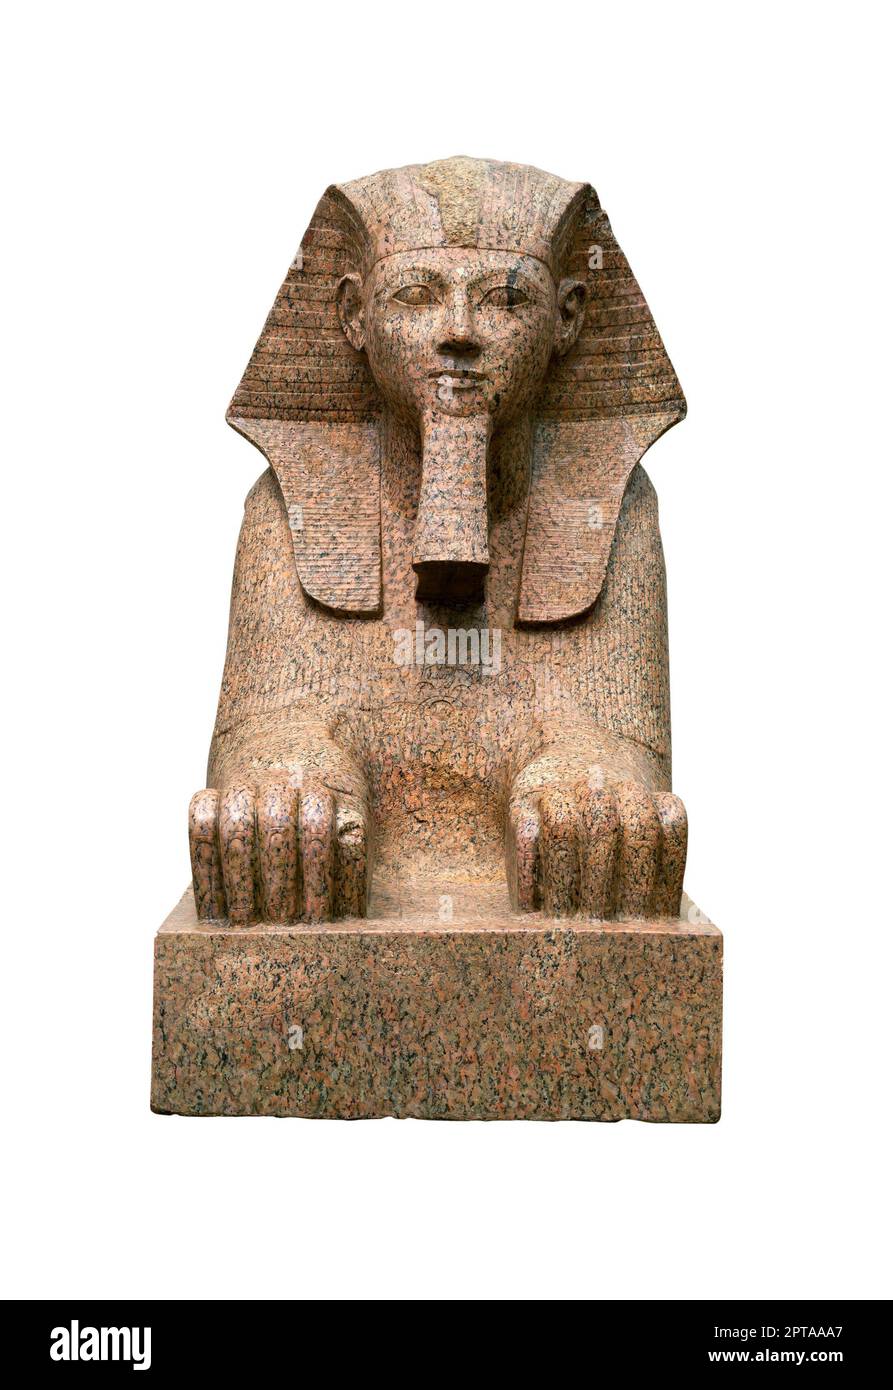 Sfinge colossale del faraone Hatshepsut femminile con il corpo di un leone e una testa umana dall'antico Epypt, vista frontale isolata su sfondo bianco Foto Stock